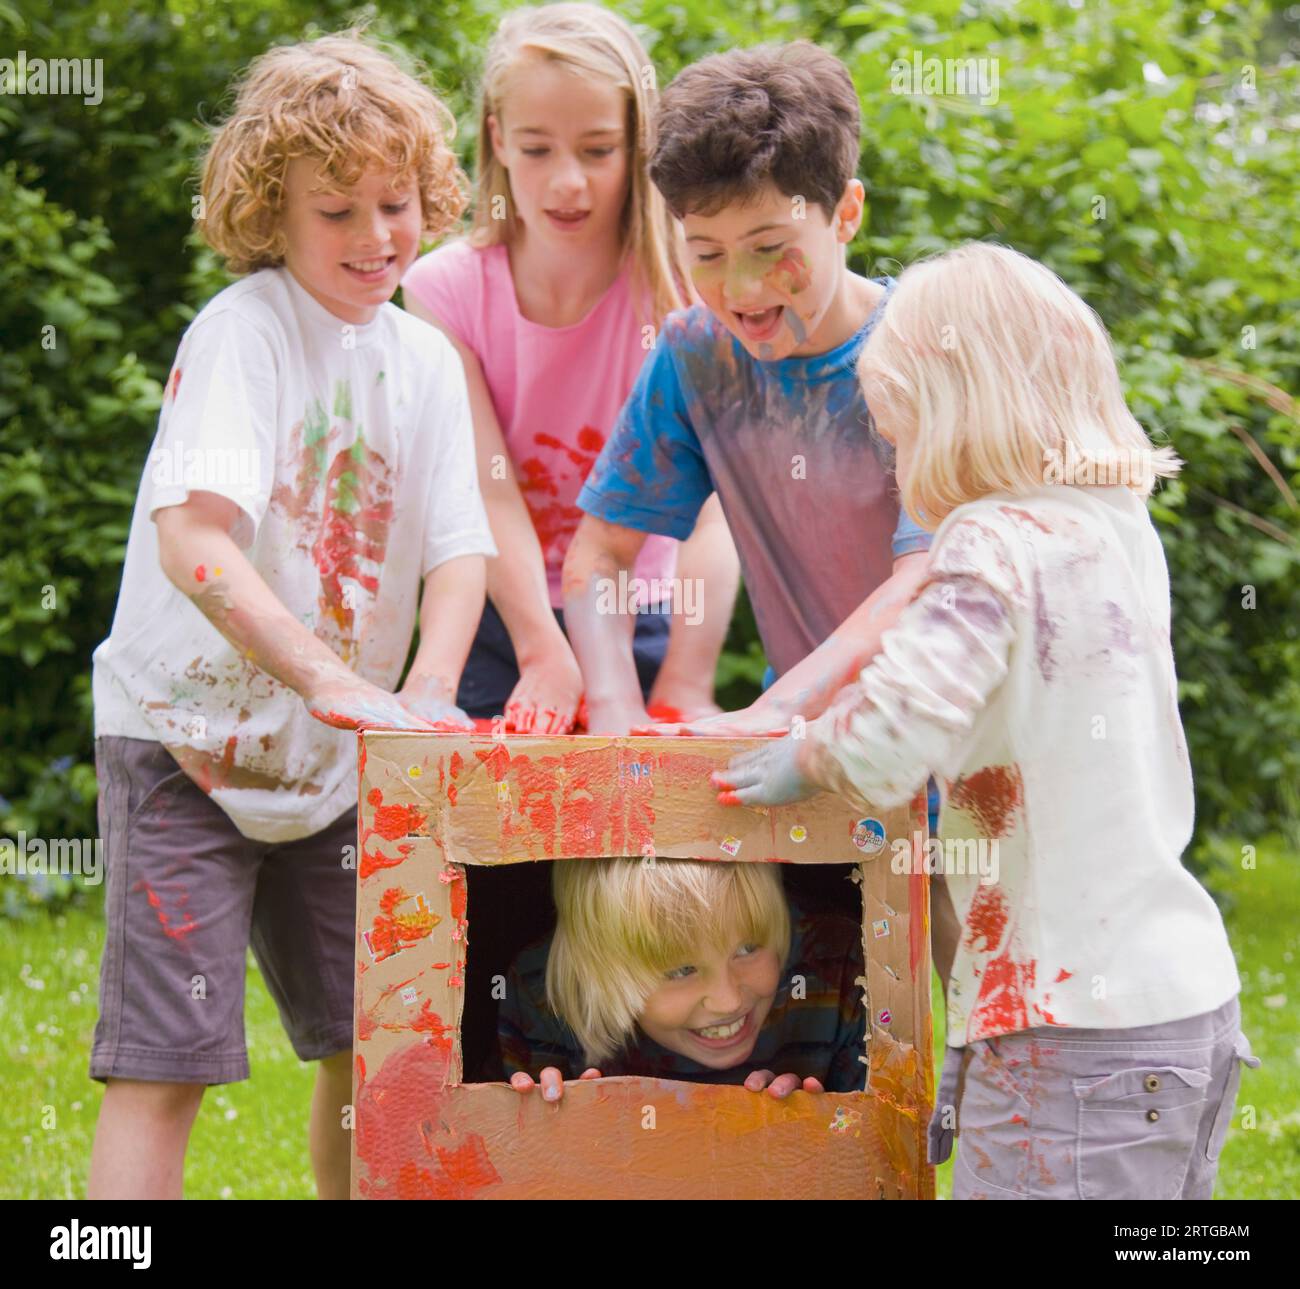 Enfants couverts de peinture aquarelle jouant dans un jardin, l'un d'eux est dans une boîte en carton Banque D'Images